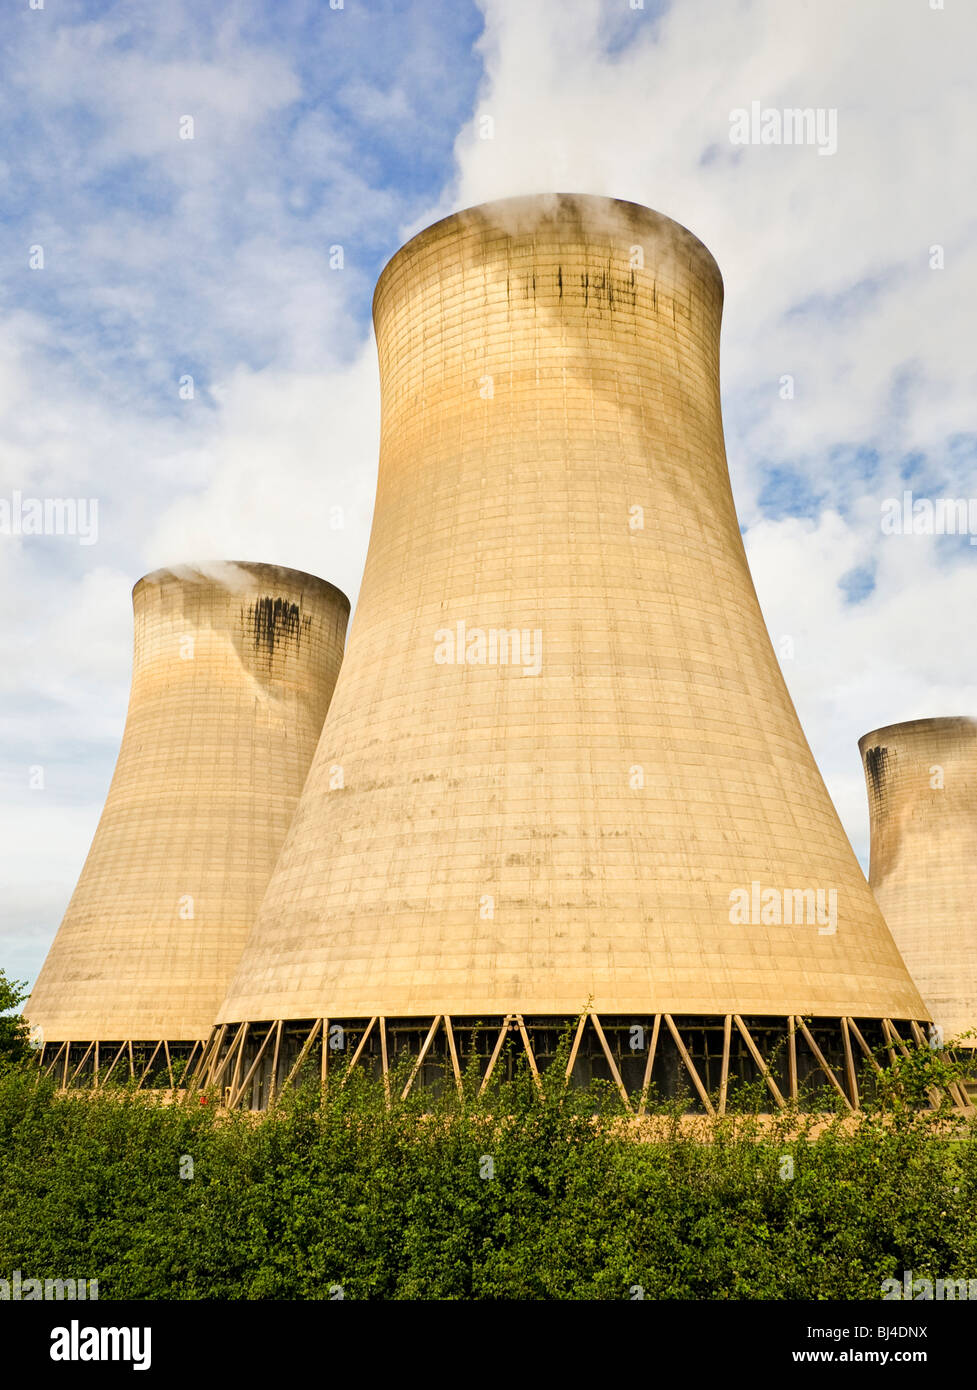 Les tours de refroidissement chez Drax centrale thermique au charbon située près de Selby North Yorkshire Angleterre UK Banque D'Images